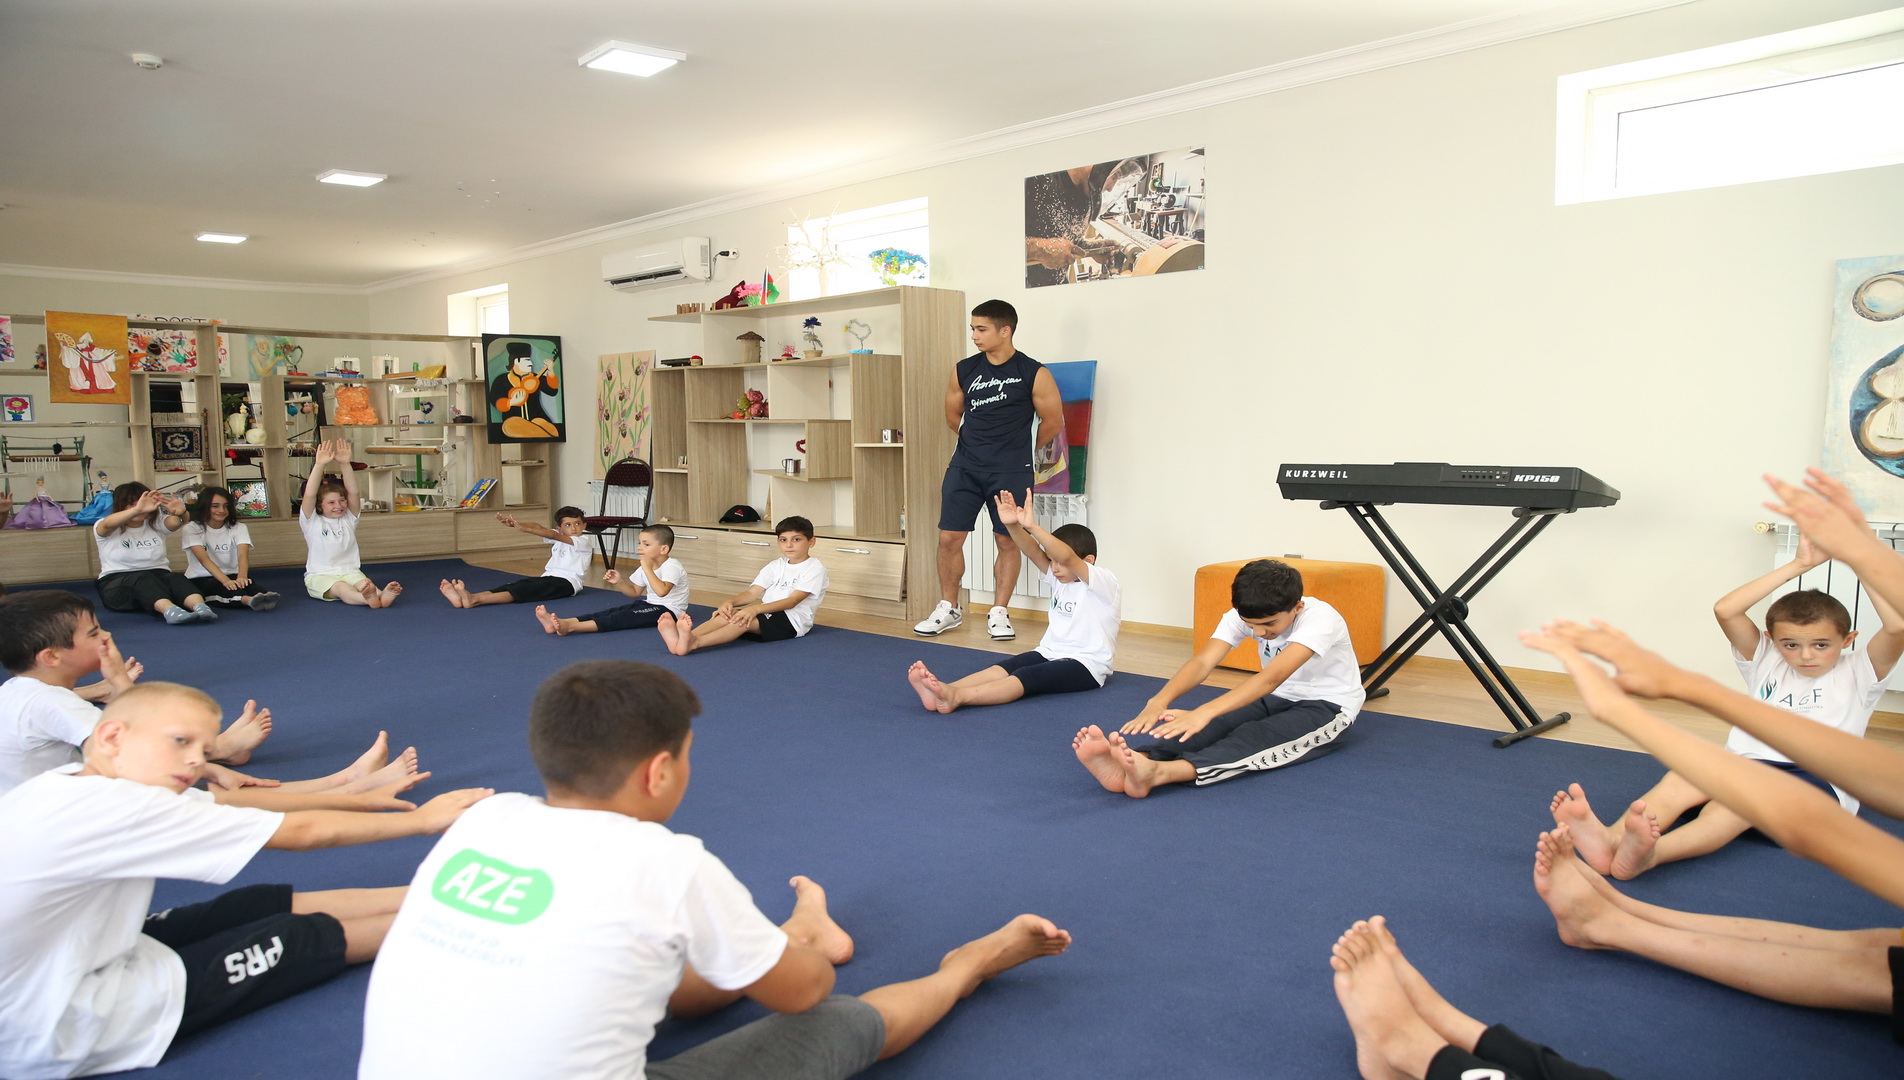 В детском приюте "Ümid yeri" открылось отделение по гимнастике (ФОТО)